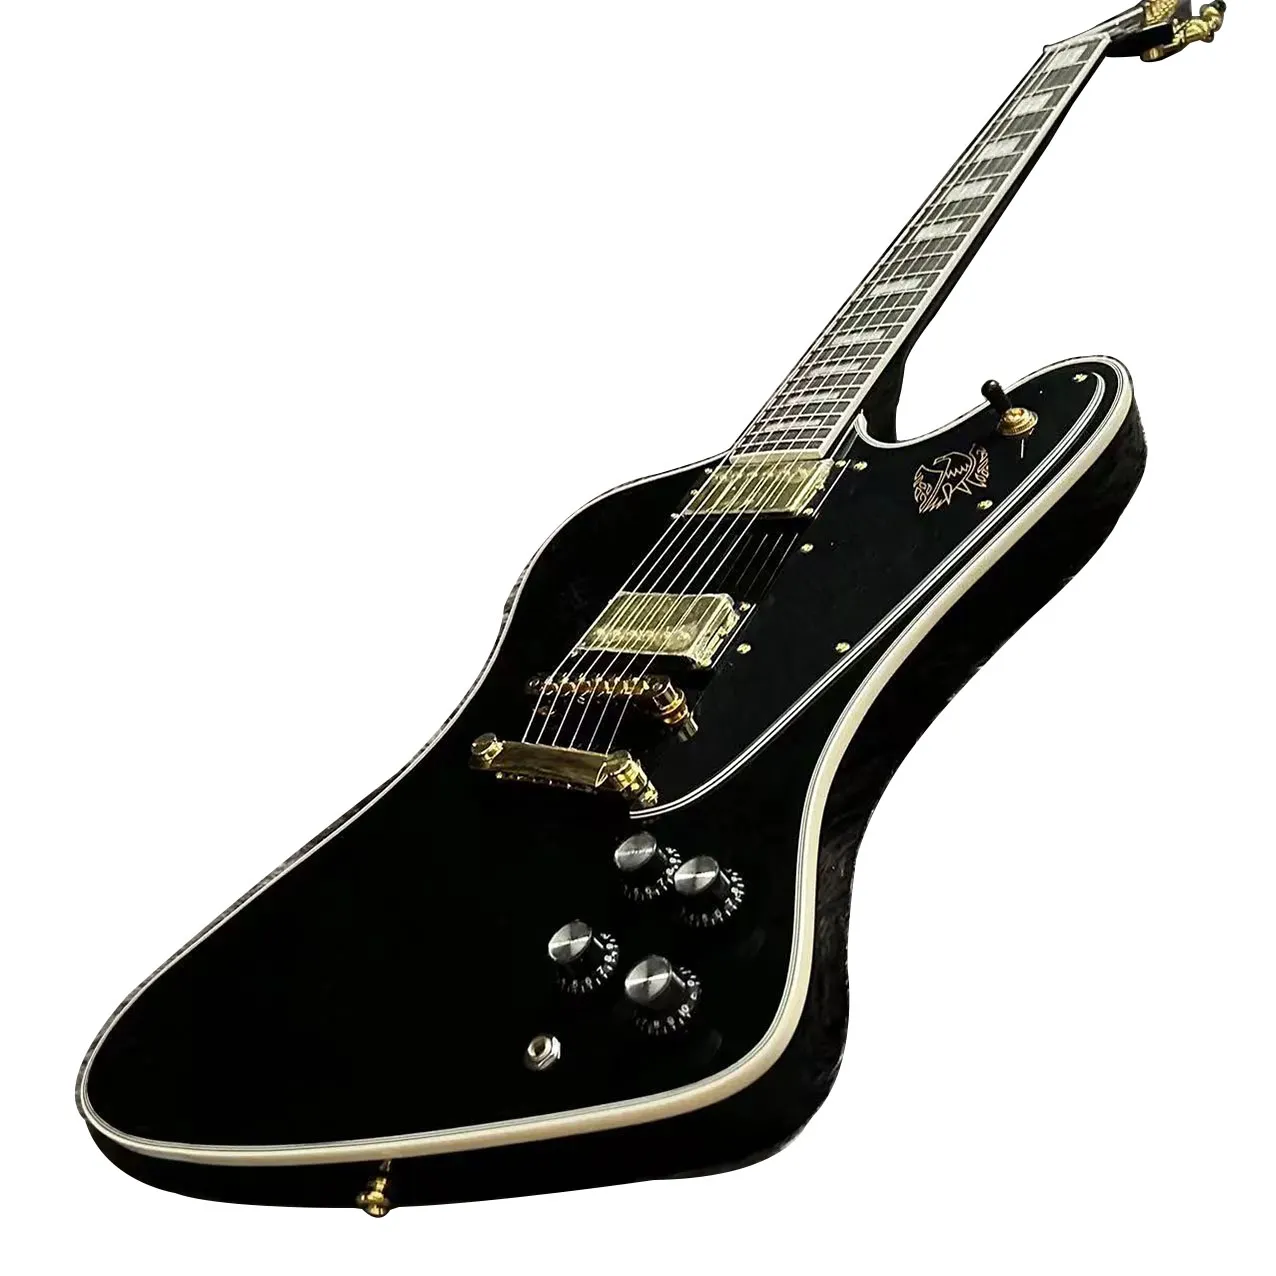 Firebird-gitaar, zwarte kleur, mahoniehouten body, palissander toets, gouden hardware, Tune O Matic Bridge, gratis schip